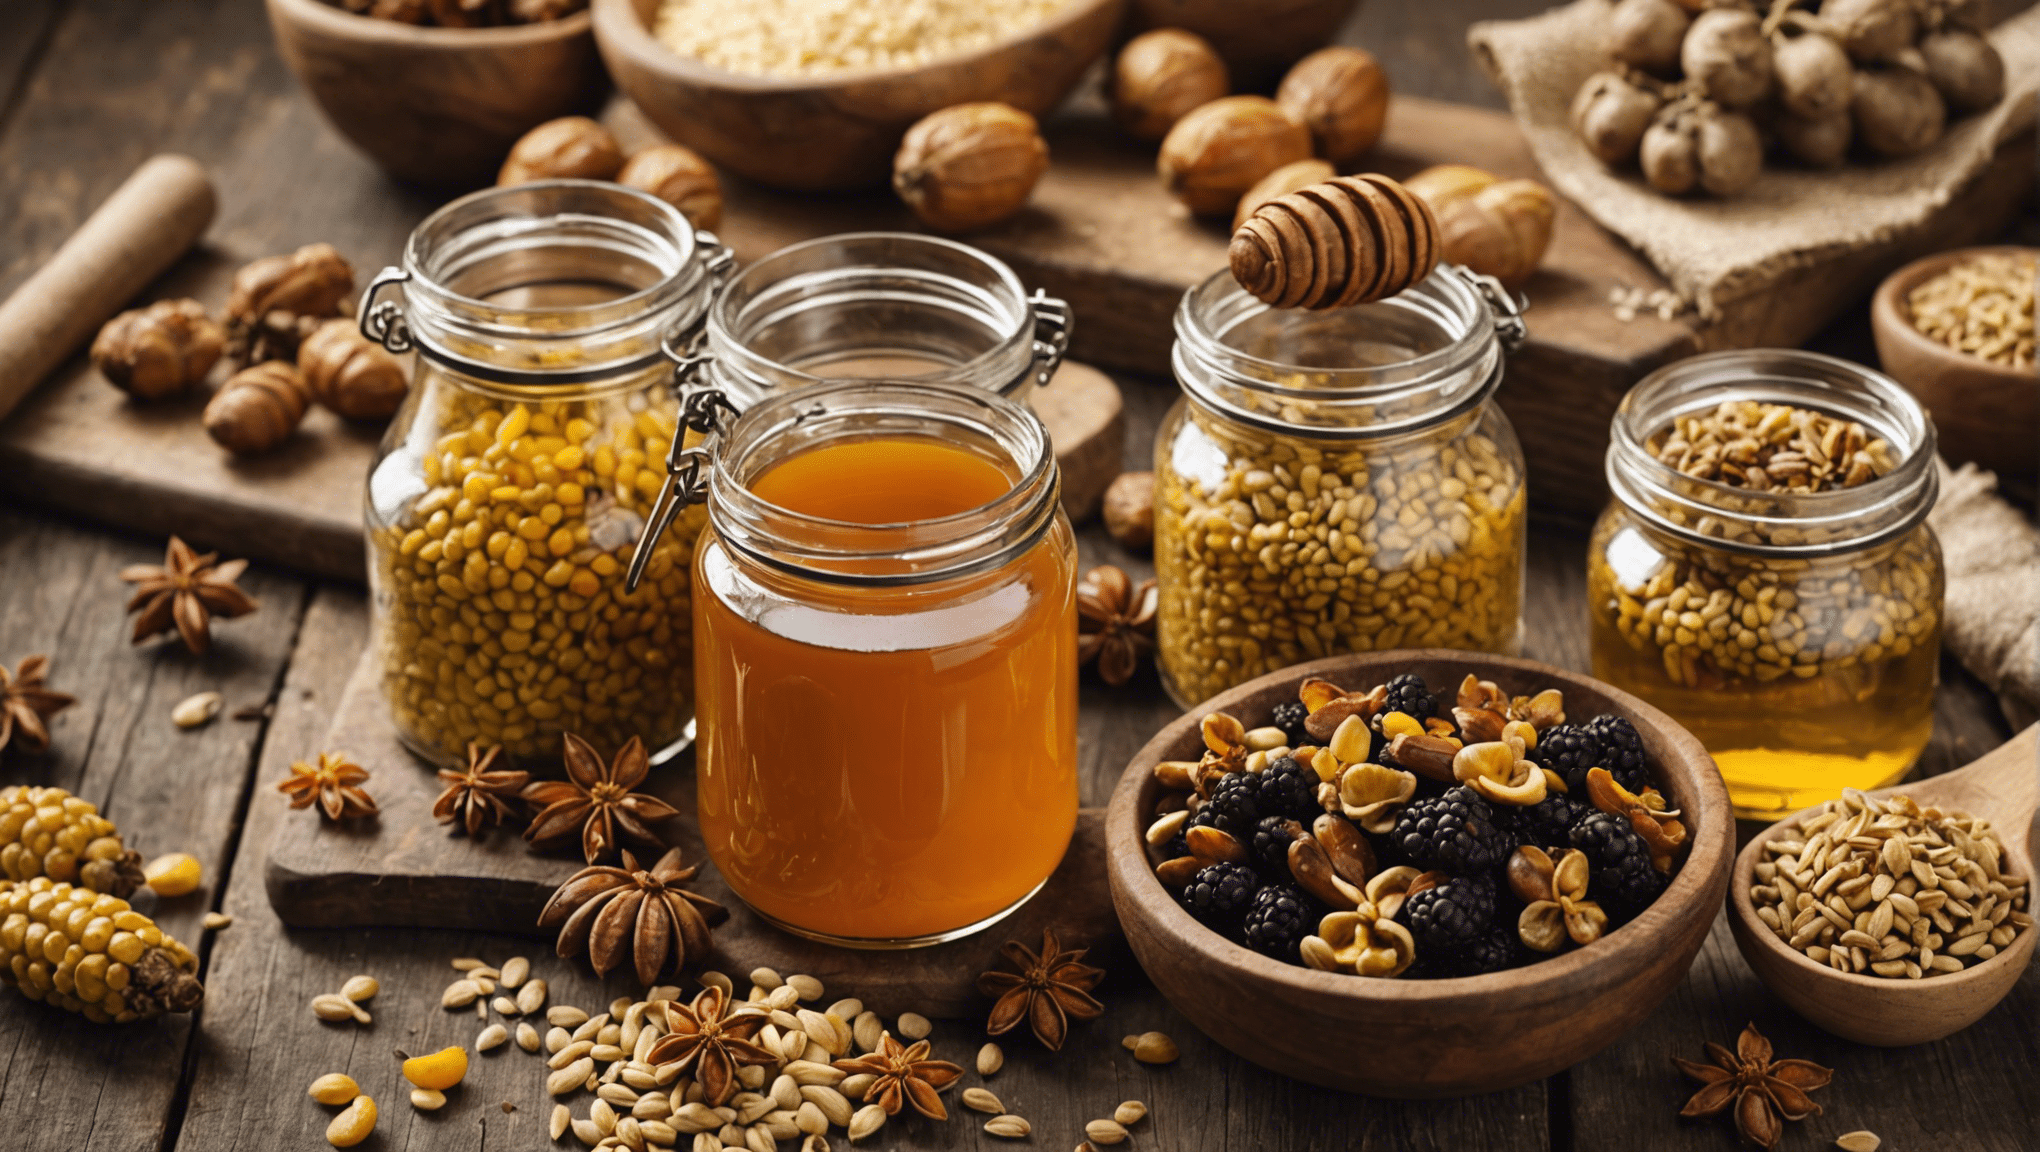 découvrez les saveurs uniques des miels de terroir et apprenez-en plus sur leurs caractéristiques et leurs subtilités. profitez d'une exploration gustative riche en traditions et en authenticité.